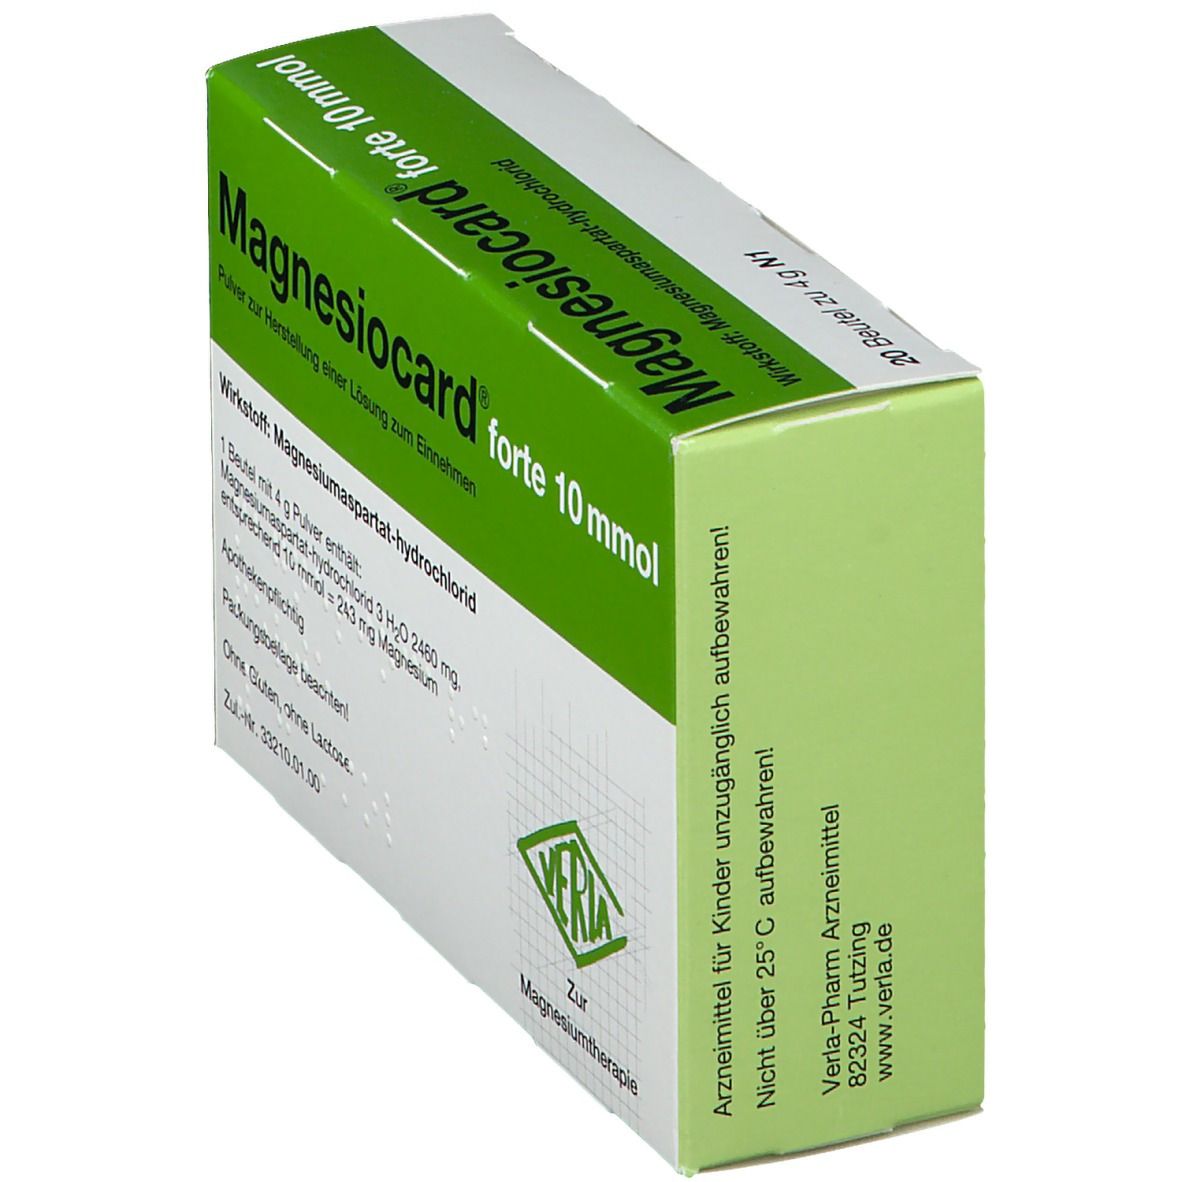 Magnesiocard® Forte 10 mmol Pulver